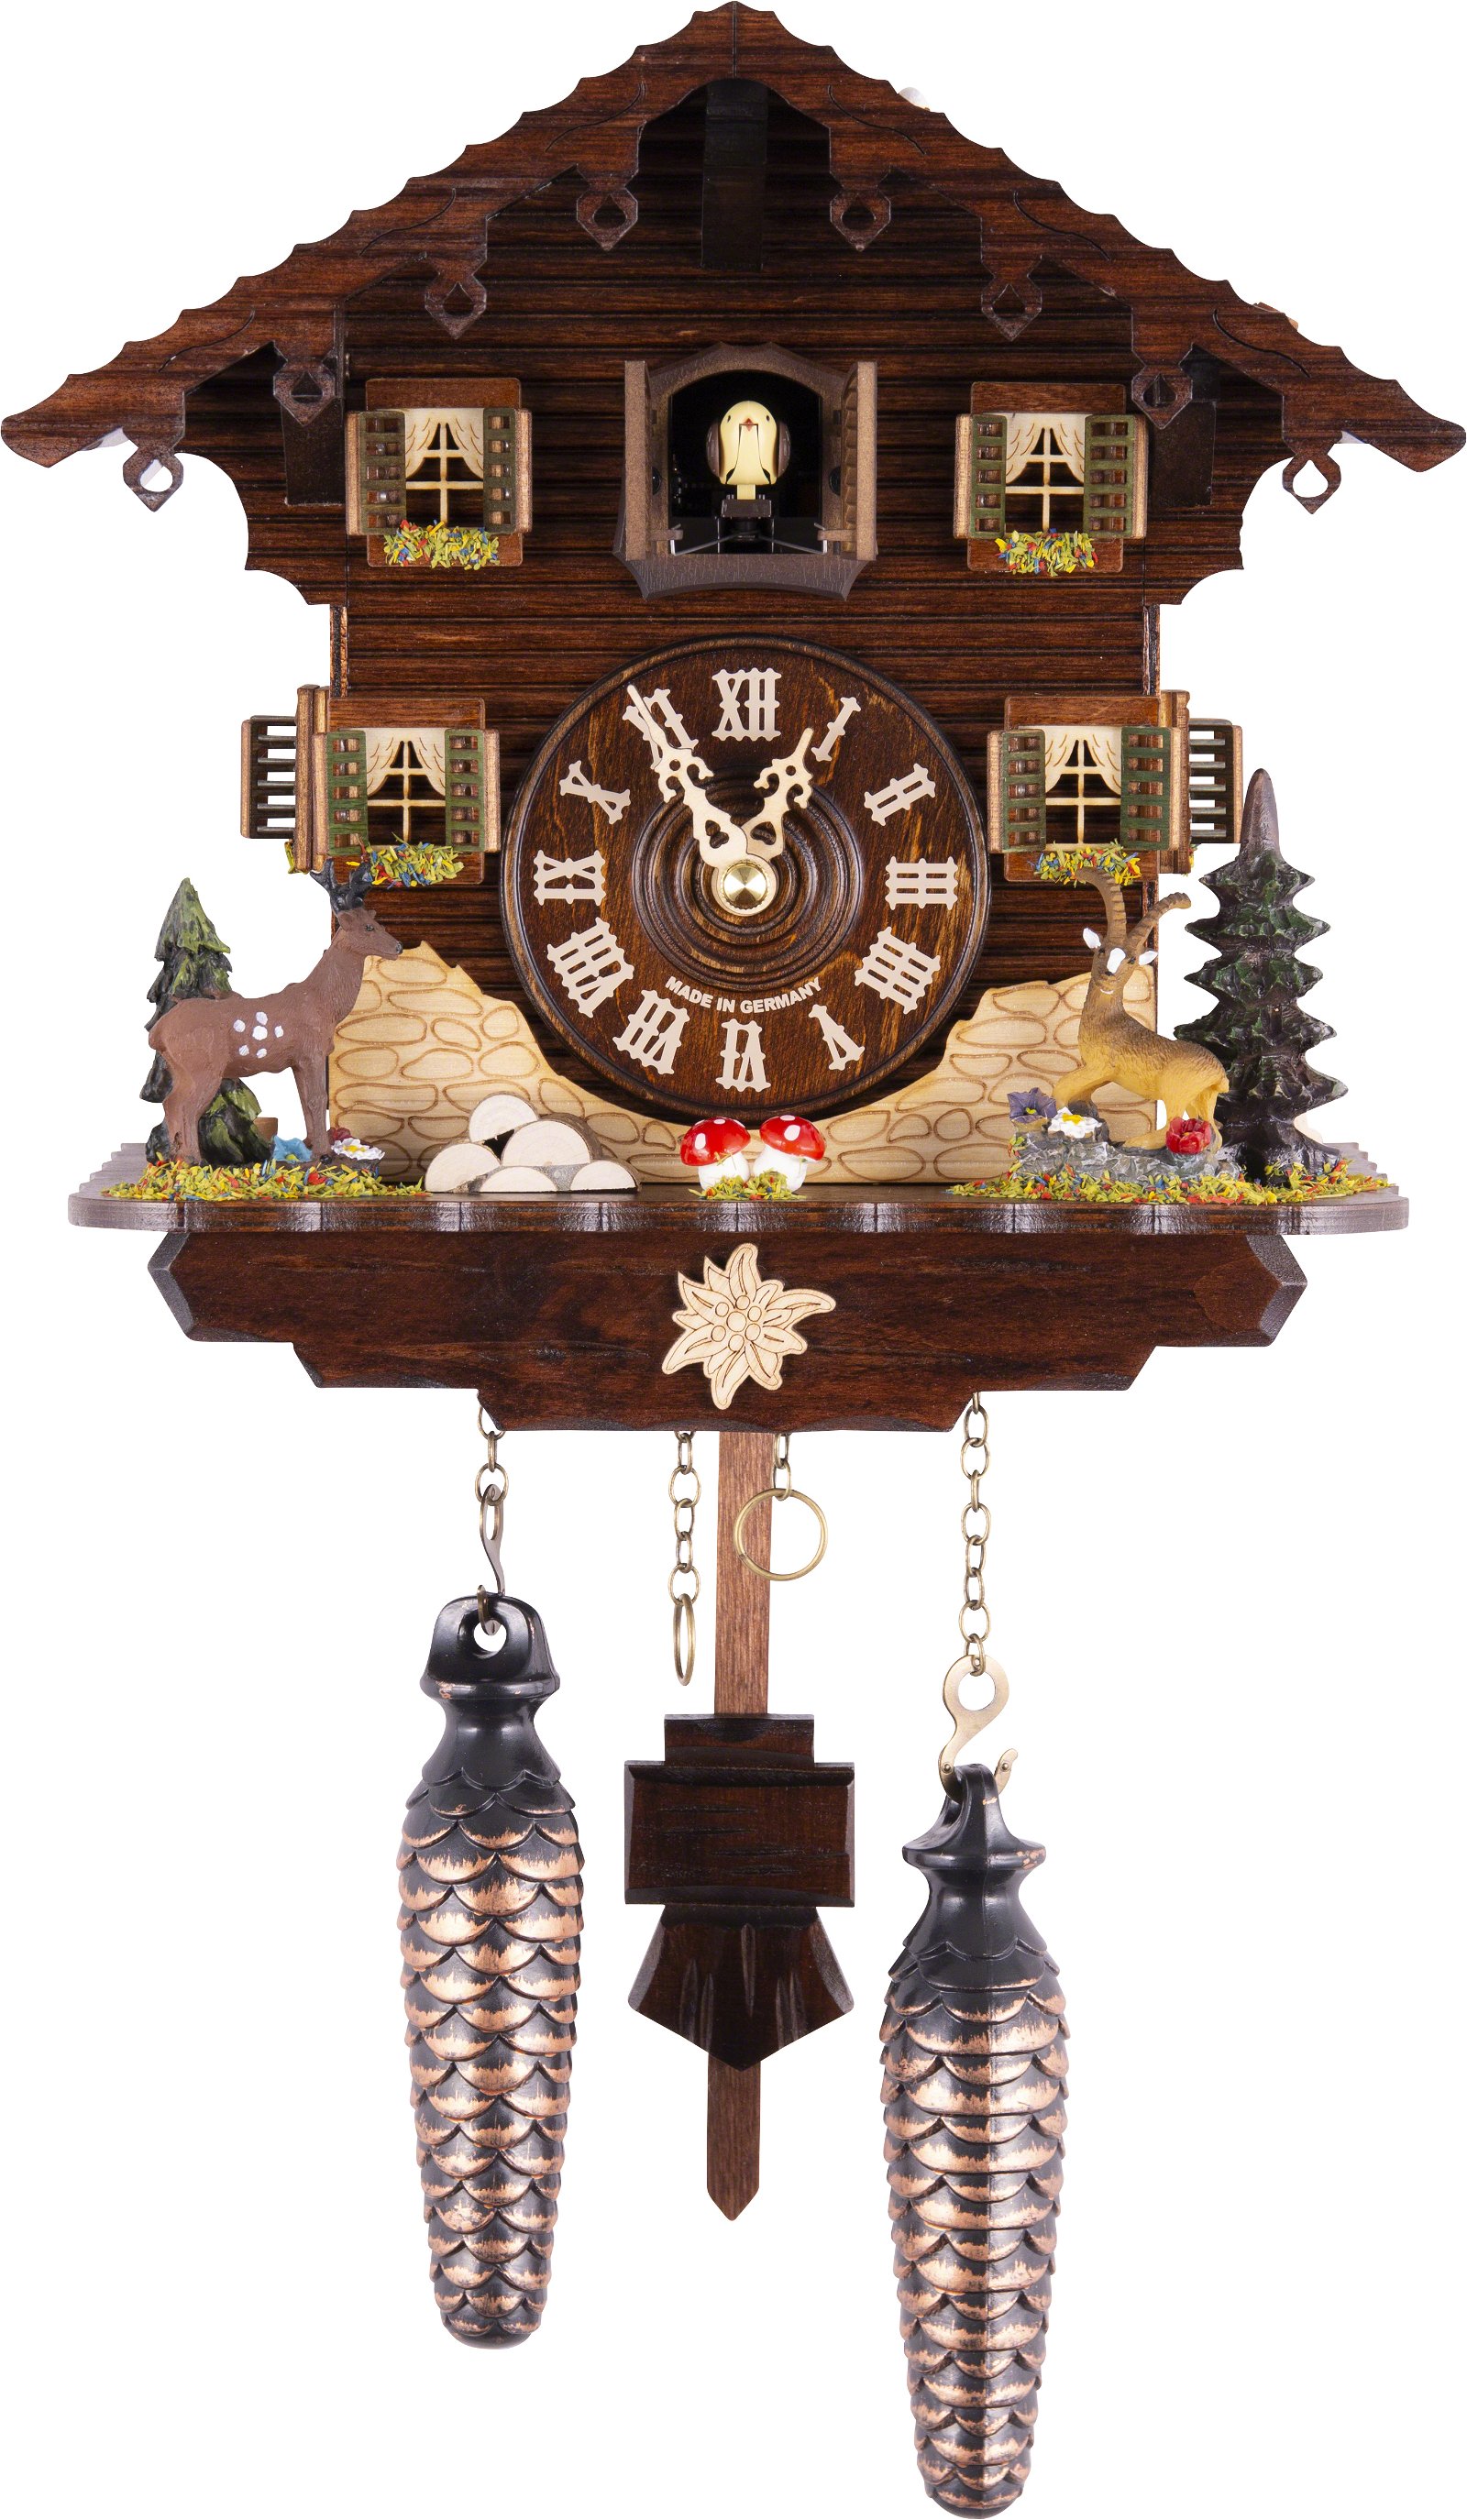 Kuckucksuhr Quarz-Uhrwerk Chalet-Stil 23cm von Trenkle Uhren